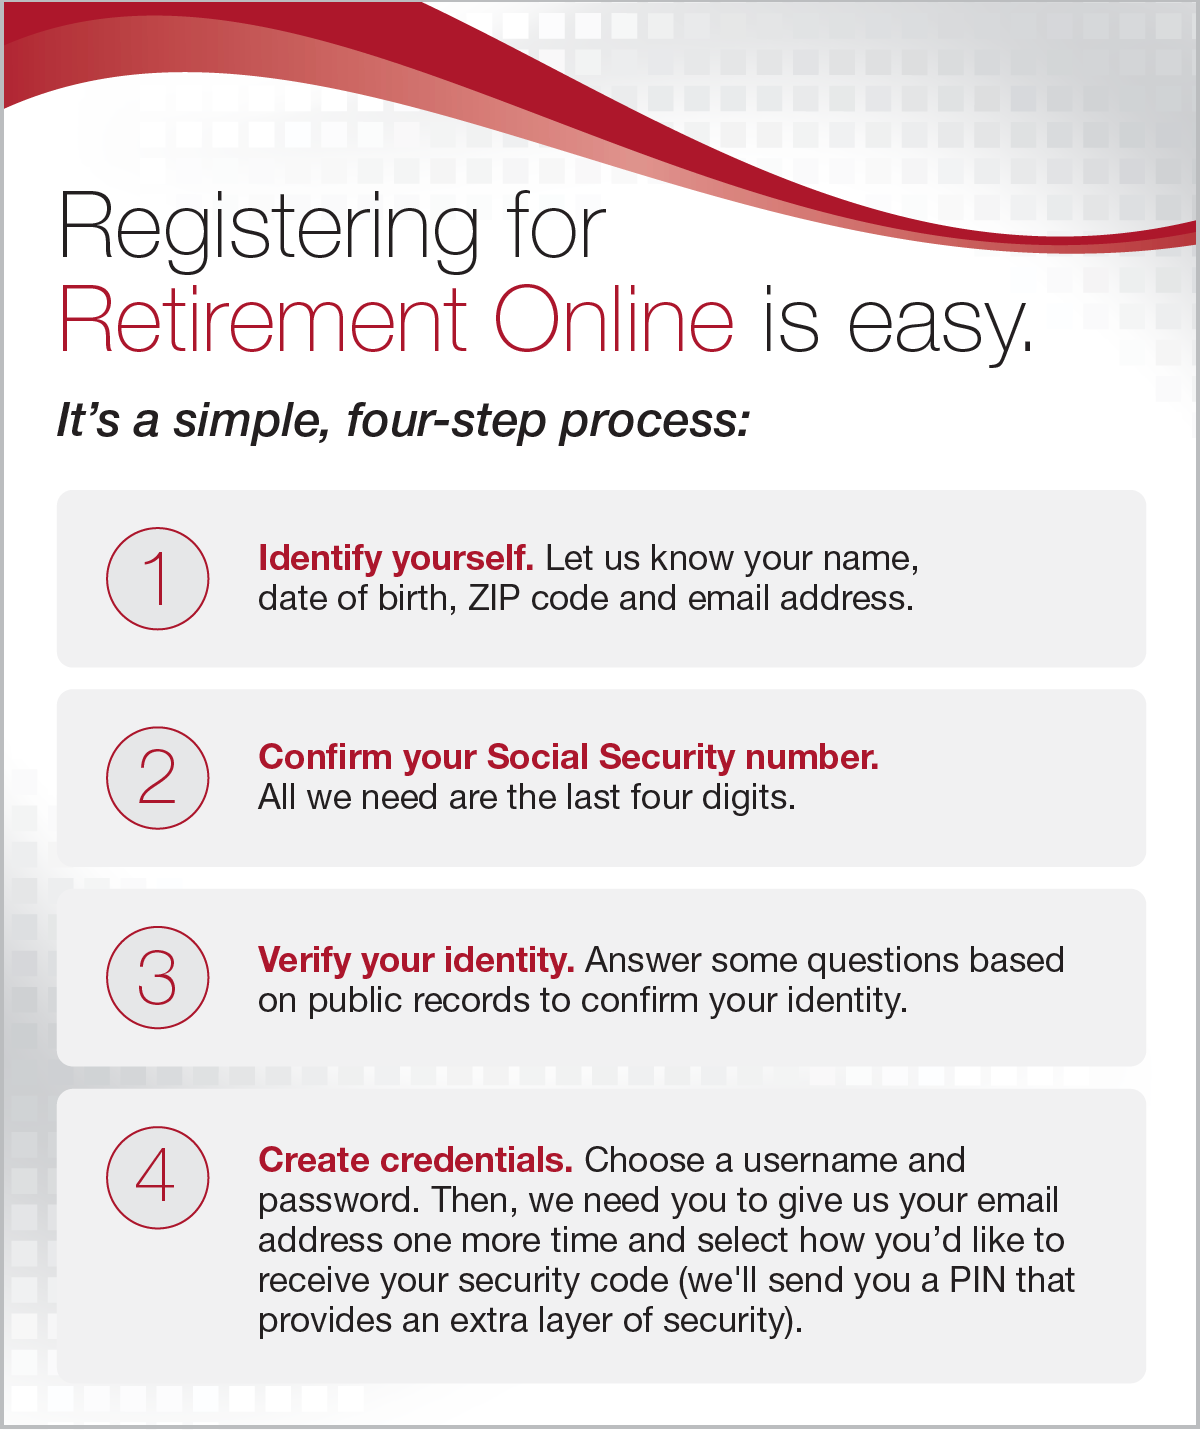 Registering for Retirement Online is easy